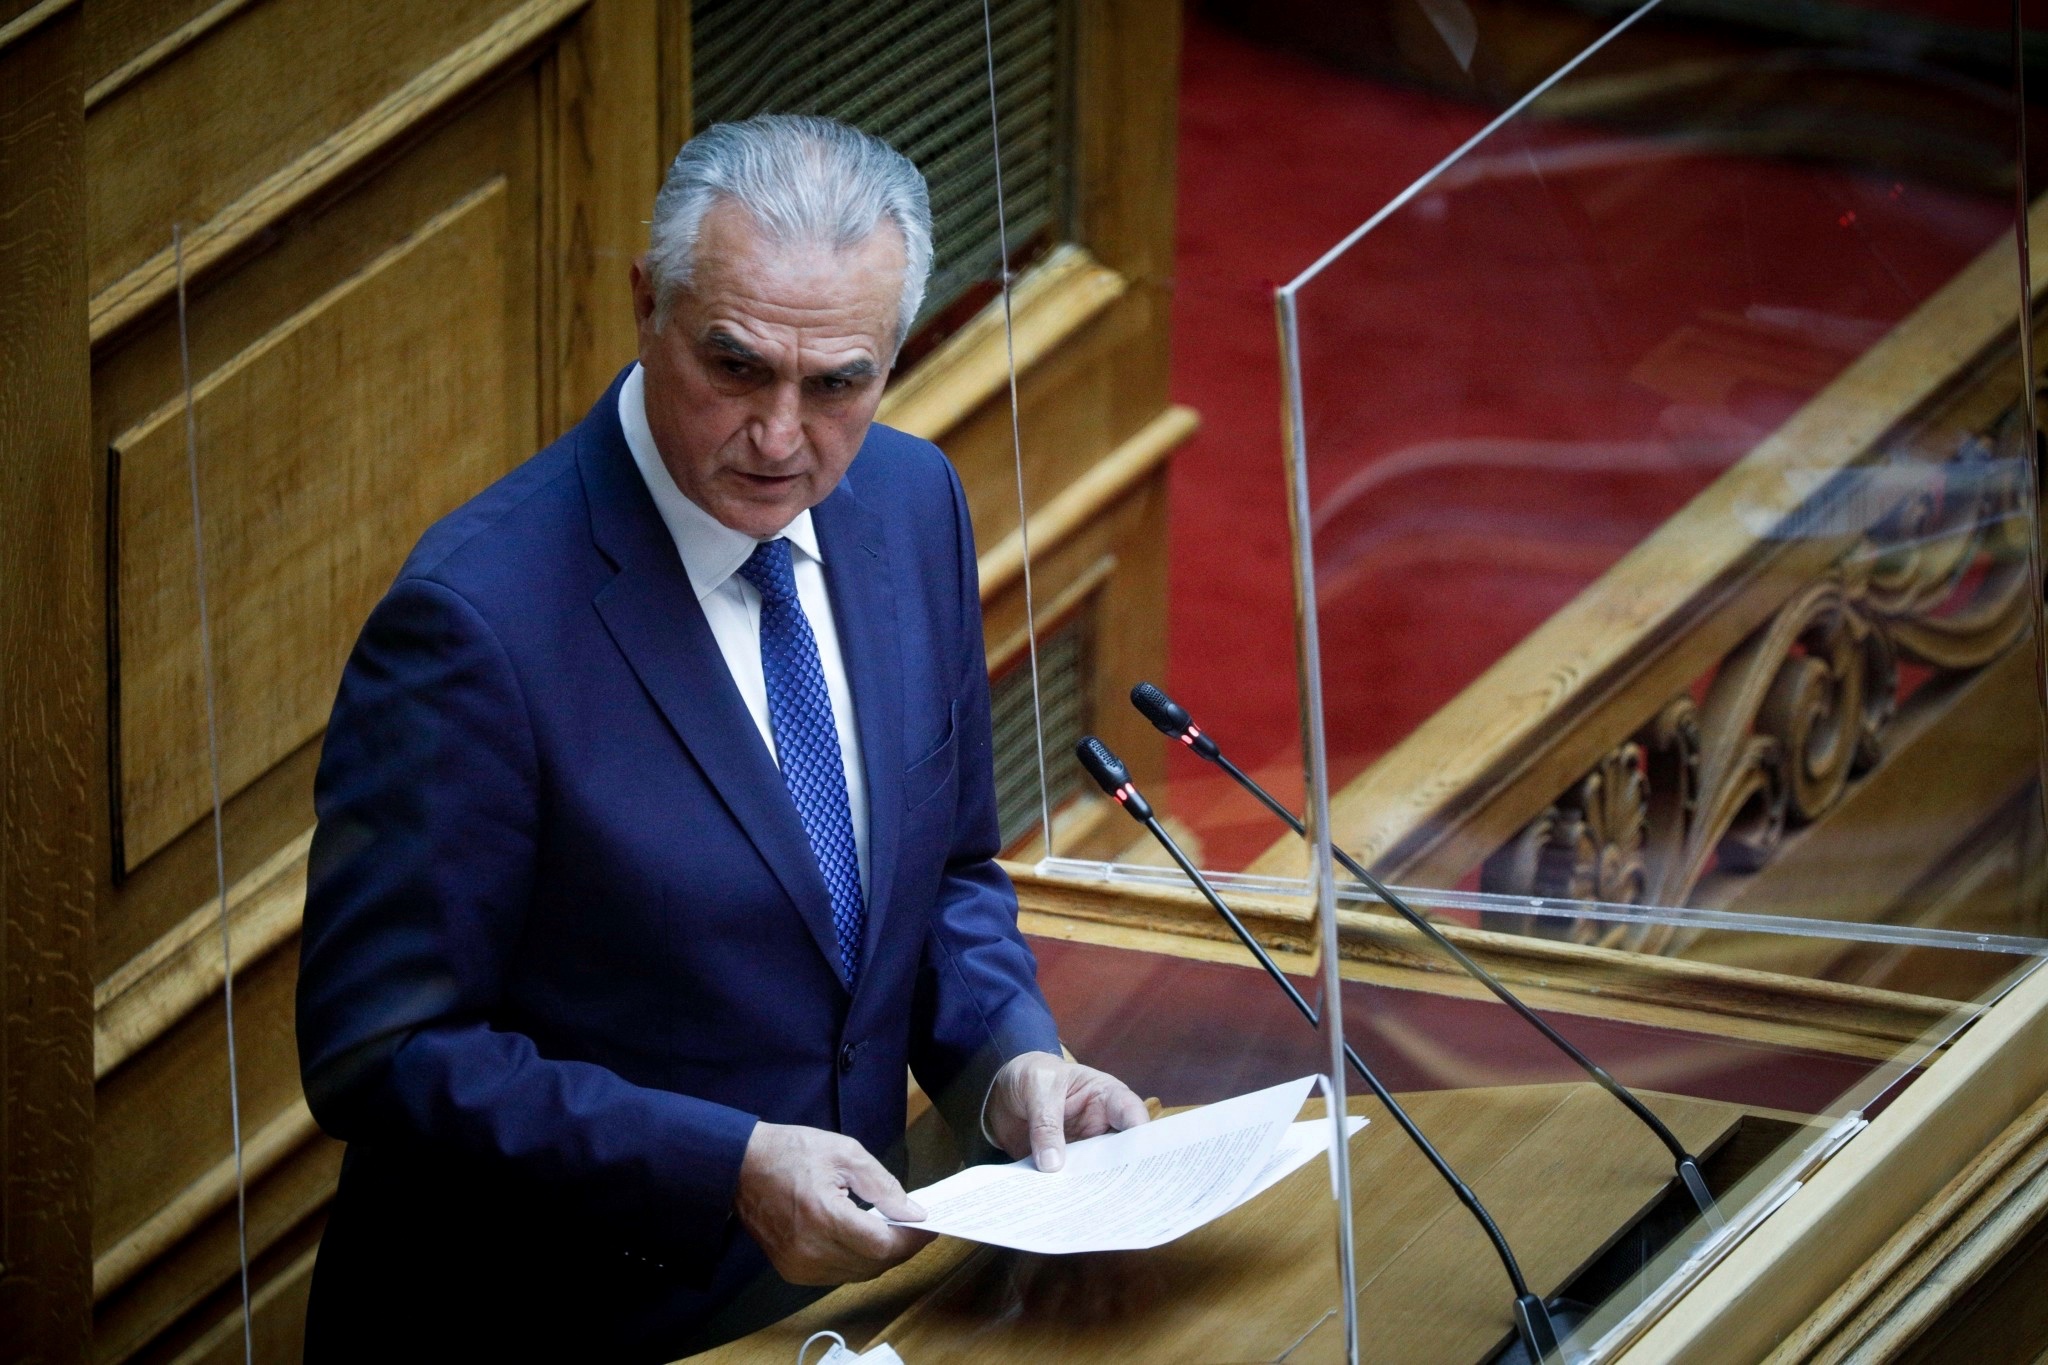 Σάββας Αναστασιάδης: ” Η Μικρασιατική καταστροφή σφράγισε την πορεία της Ελλάδας”